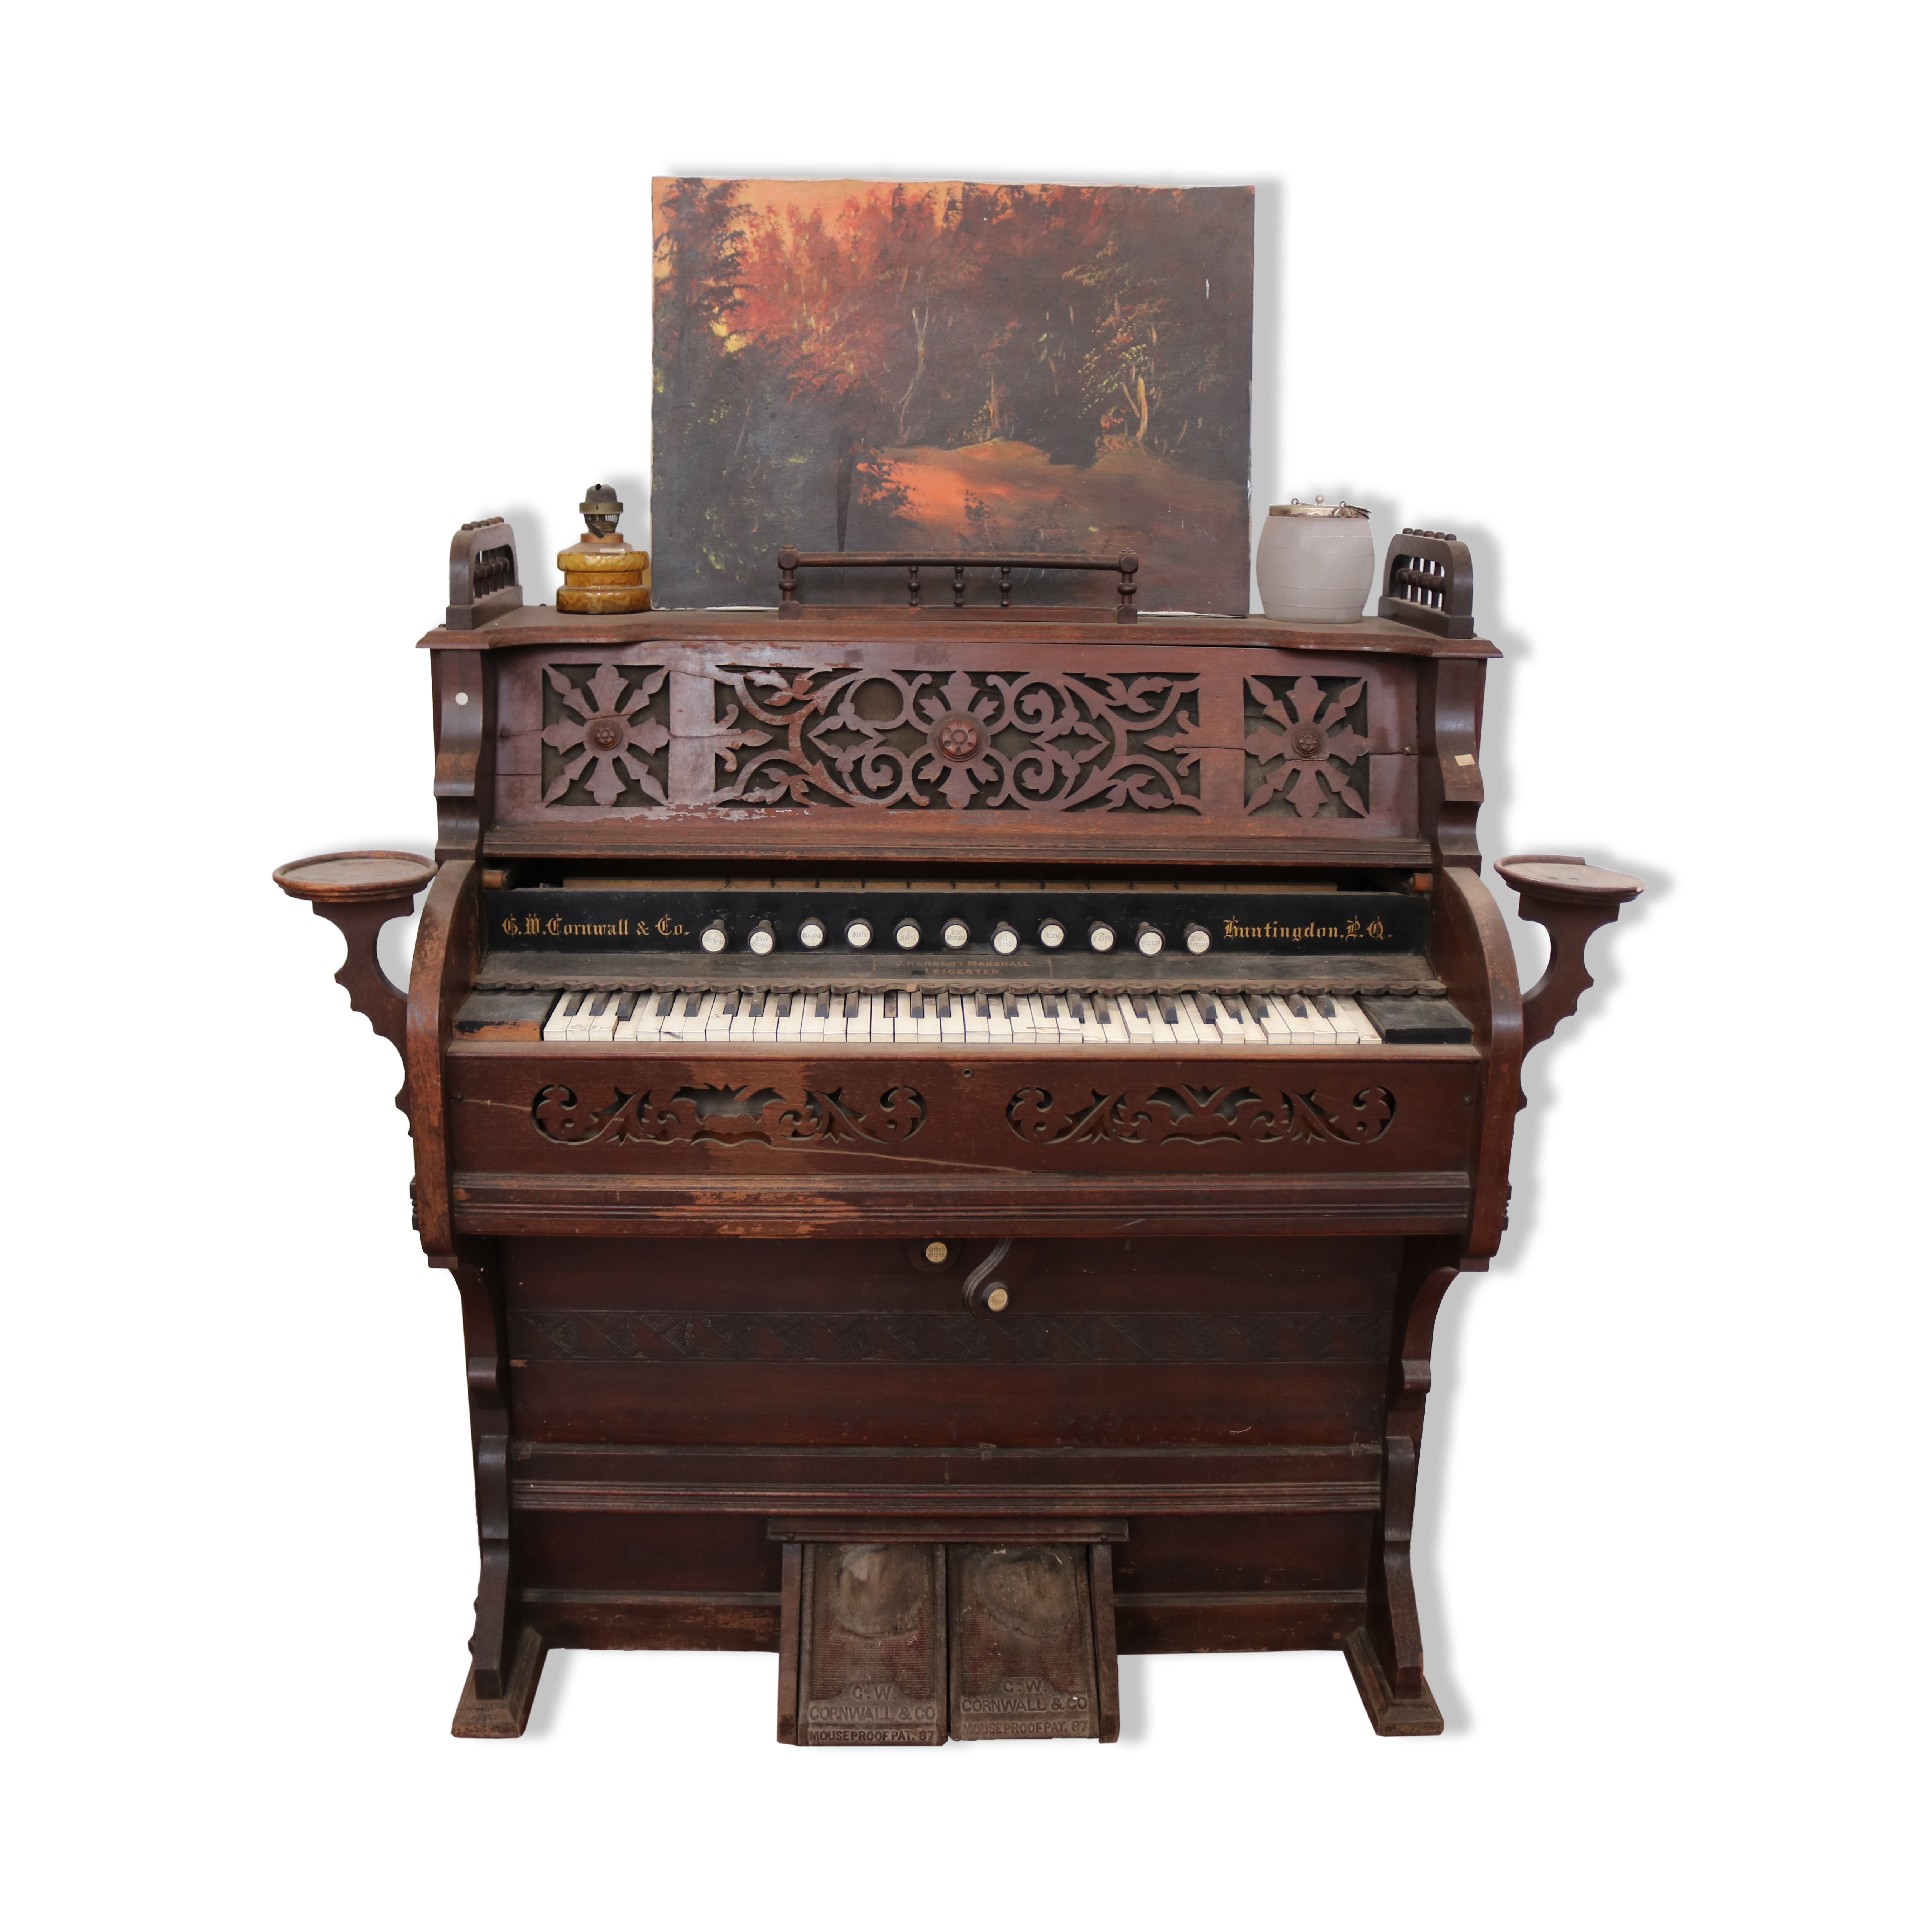 Antico organo in legno. - Strumenti musicali - Mobili antichi - Prodotti - Antichità Fiorillo